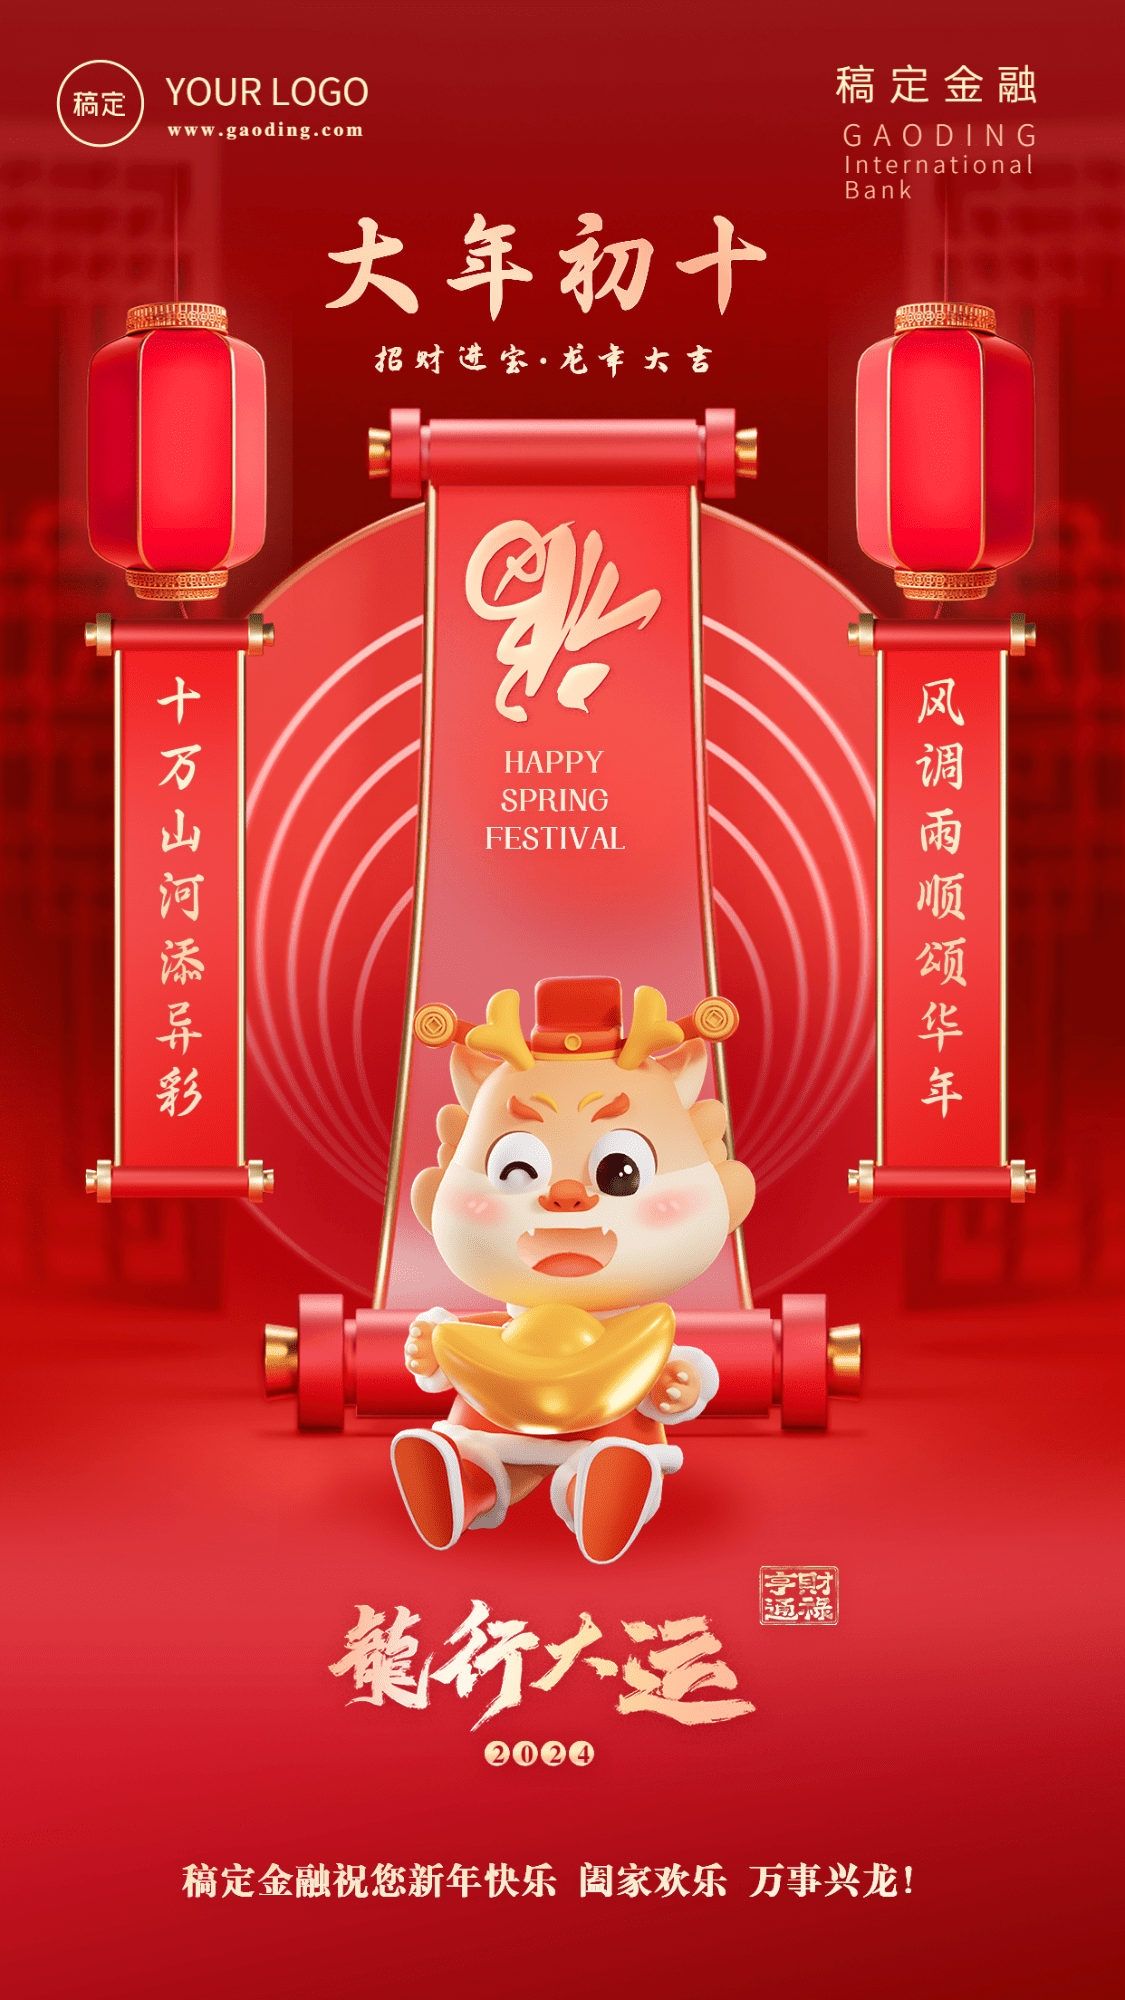 春节龙年正月初十金融保险节日祝福喜庆3D系列手机海报预览效果